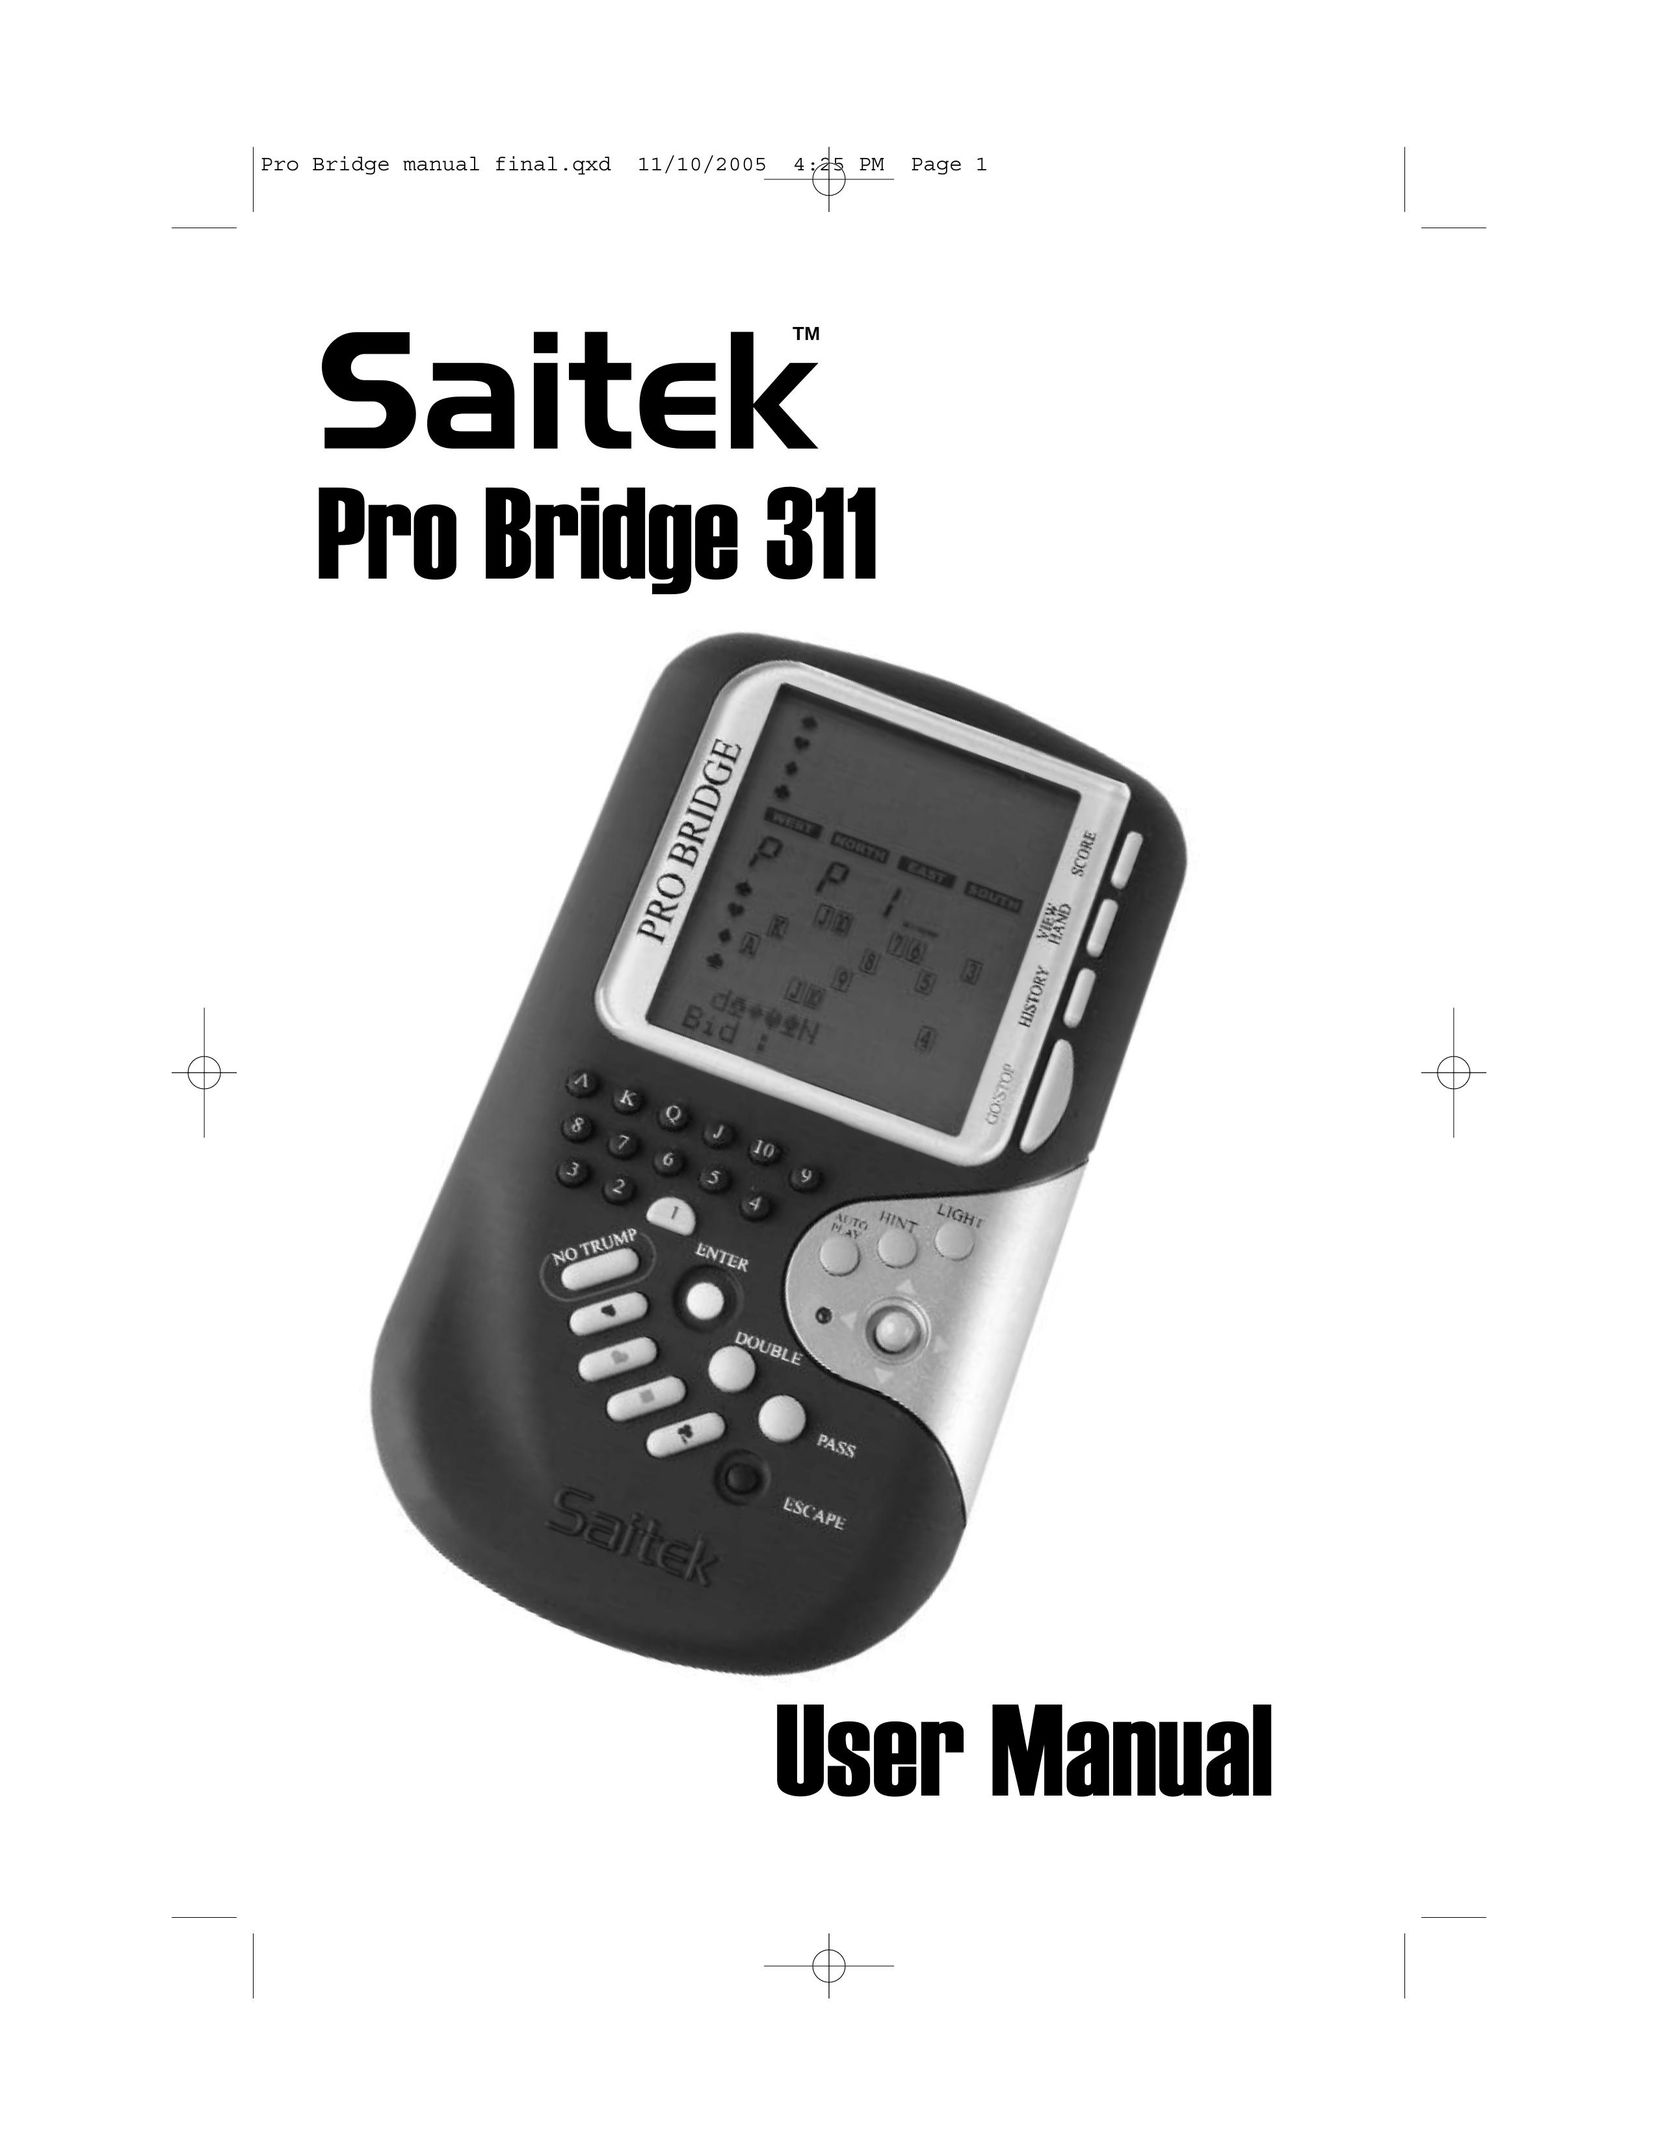 Saitek 311 Network Router User Manual